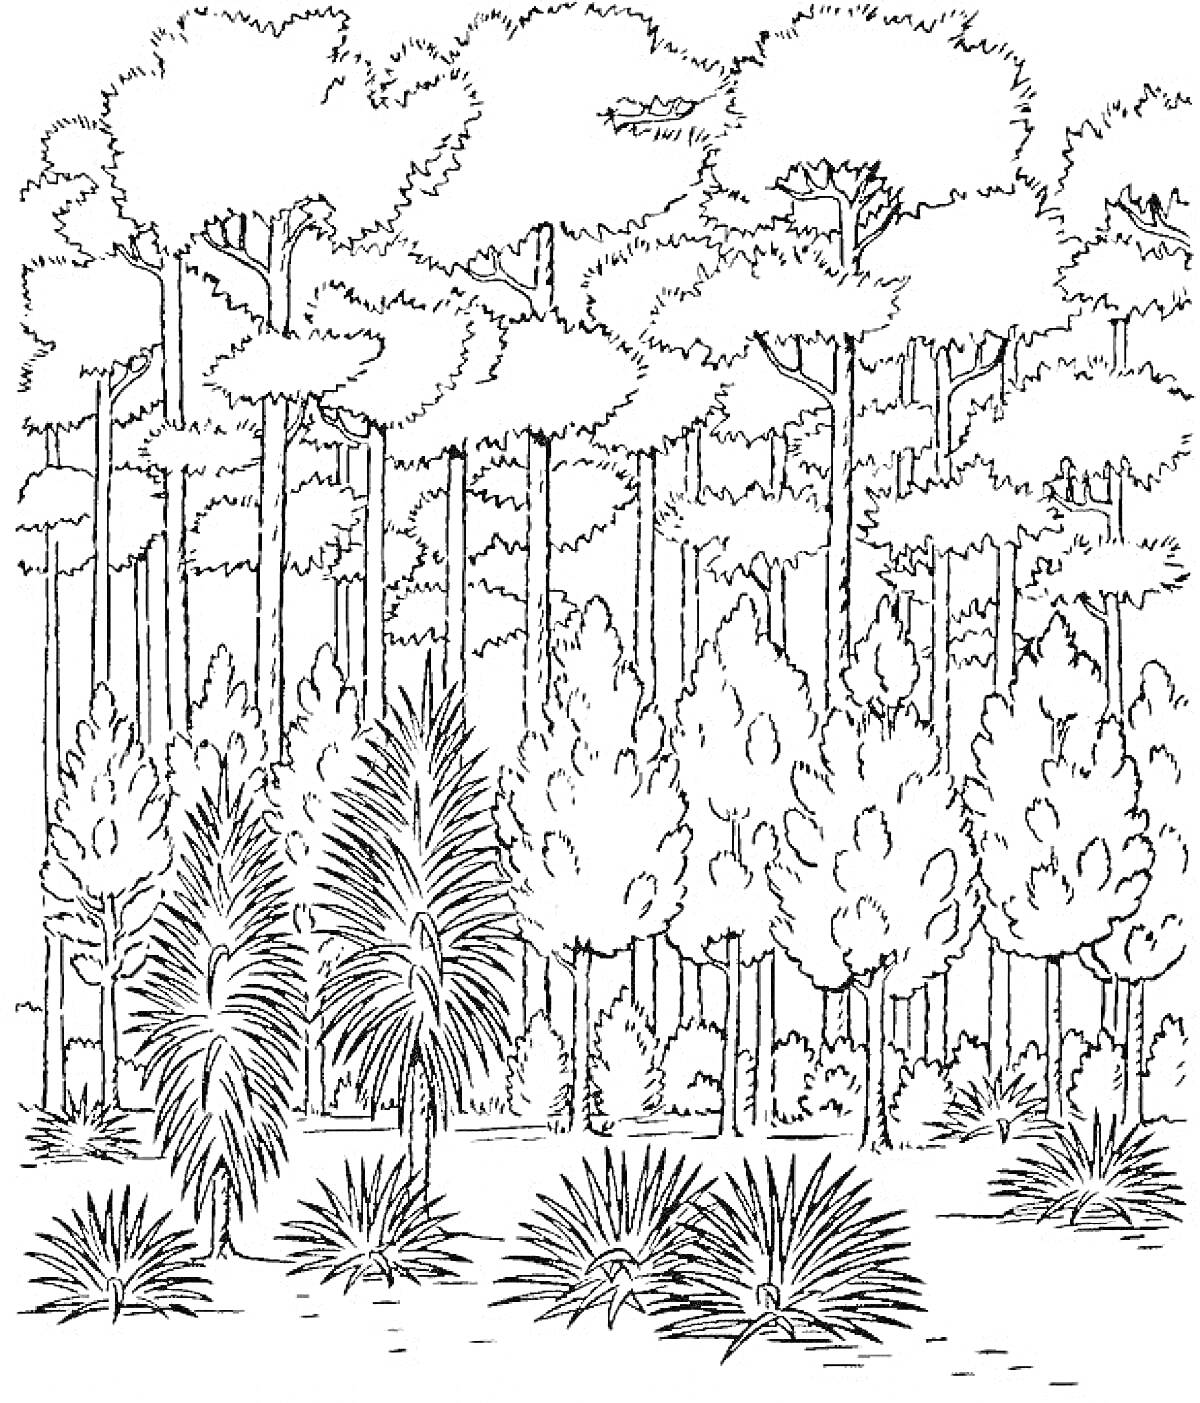 Лесной пейзаж с соснами и кустарниками на переднем плане